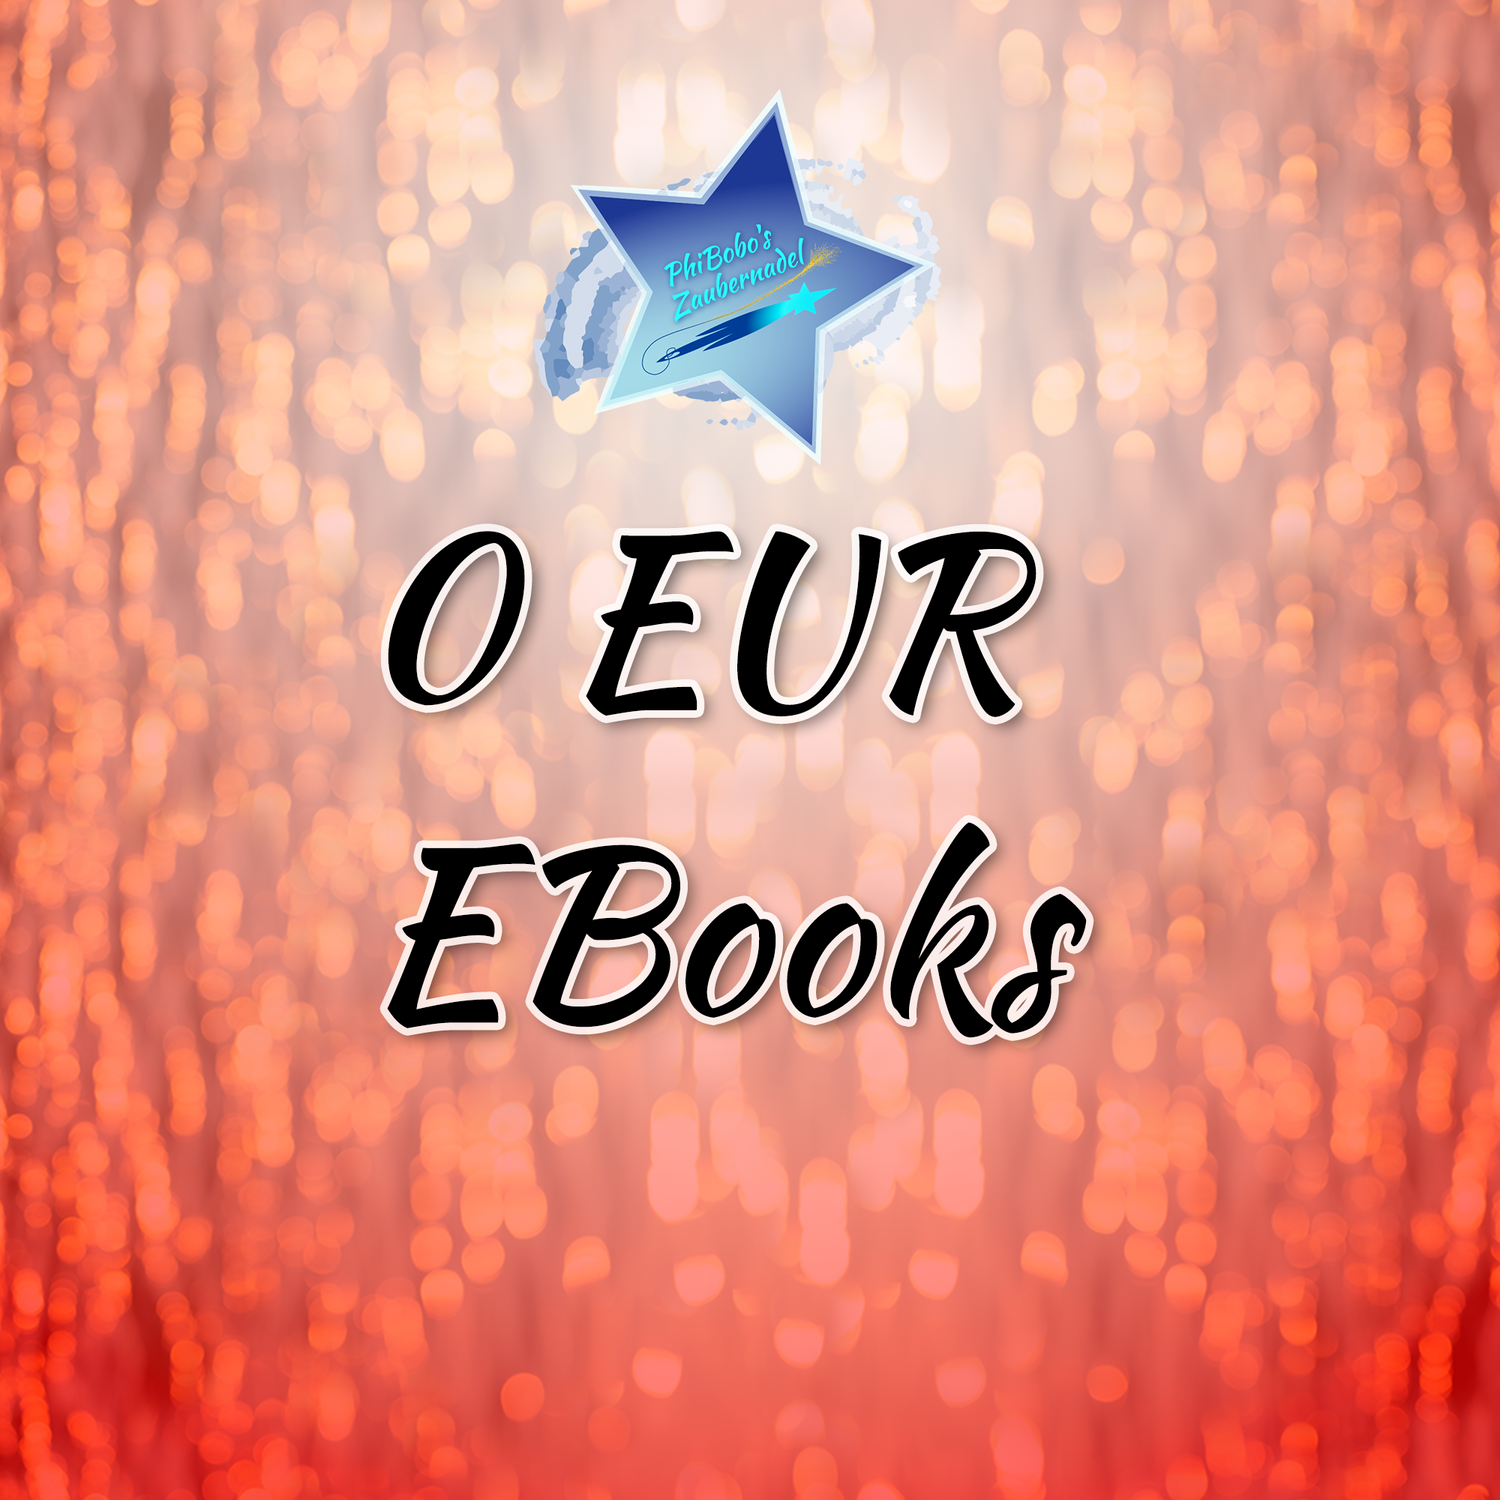 0 EUR EBooks